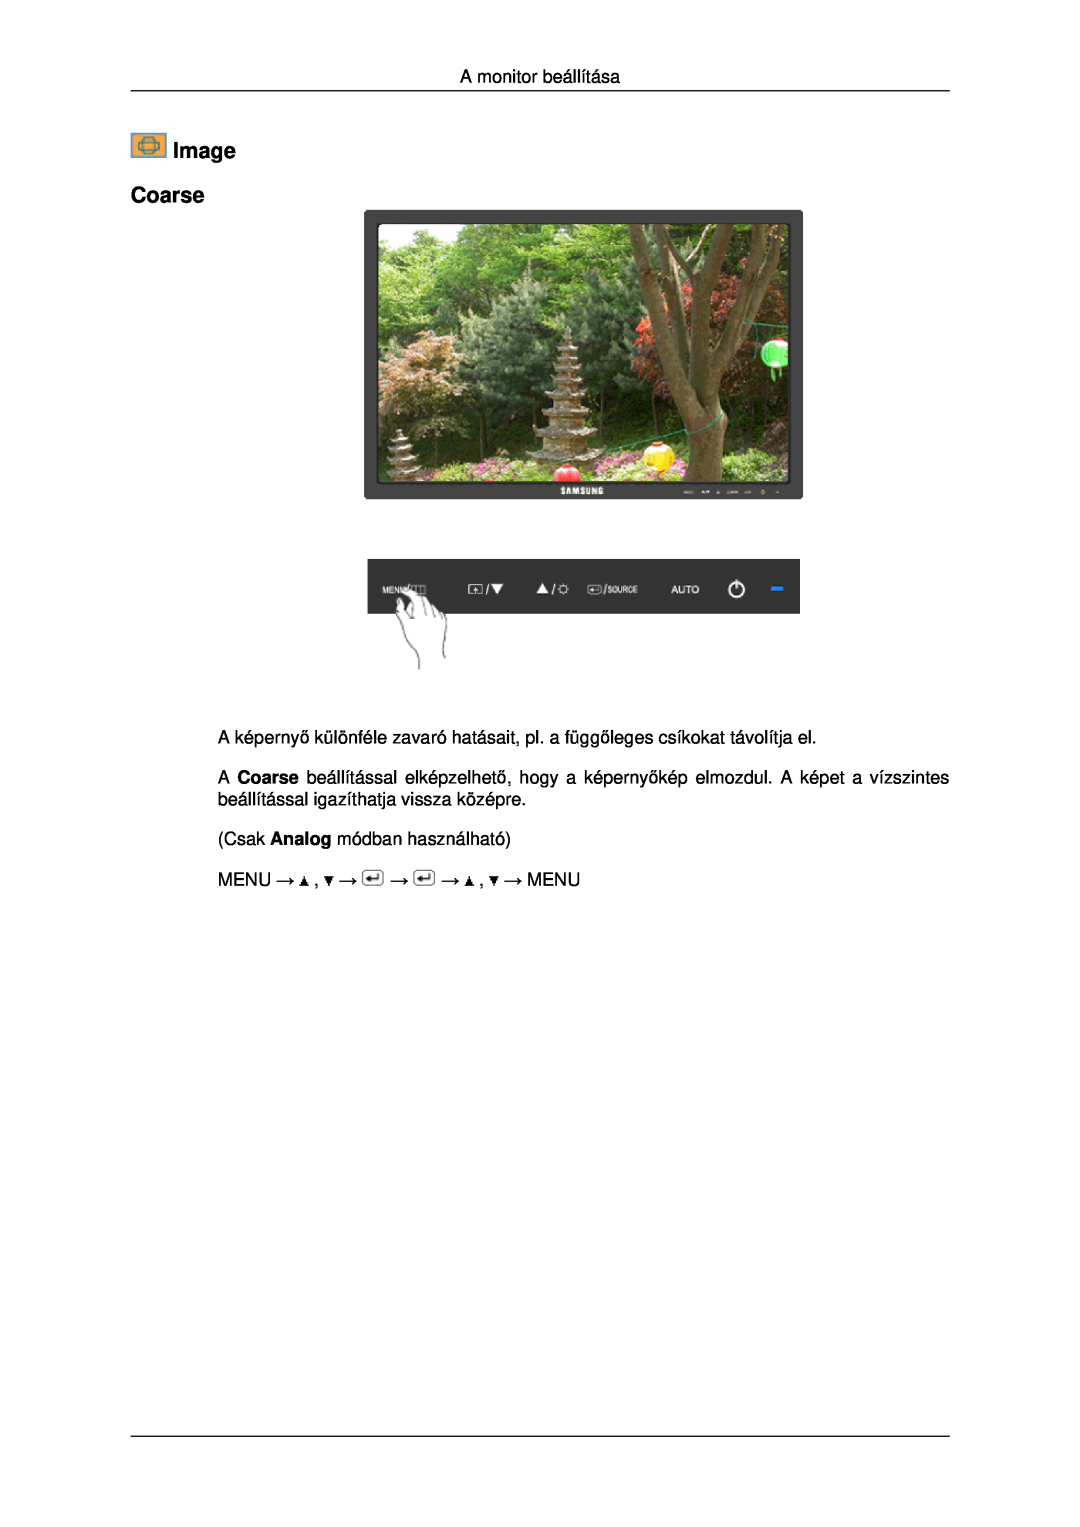 Samsung LS19MYDEBCBEDC manual Image Coarse, A monitor beállítása, Csak Analog módban használható MENU → , → → → , → MENU 